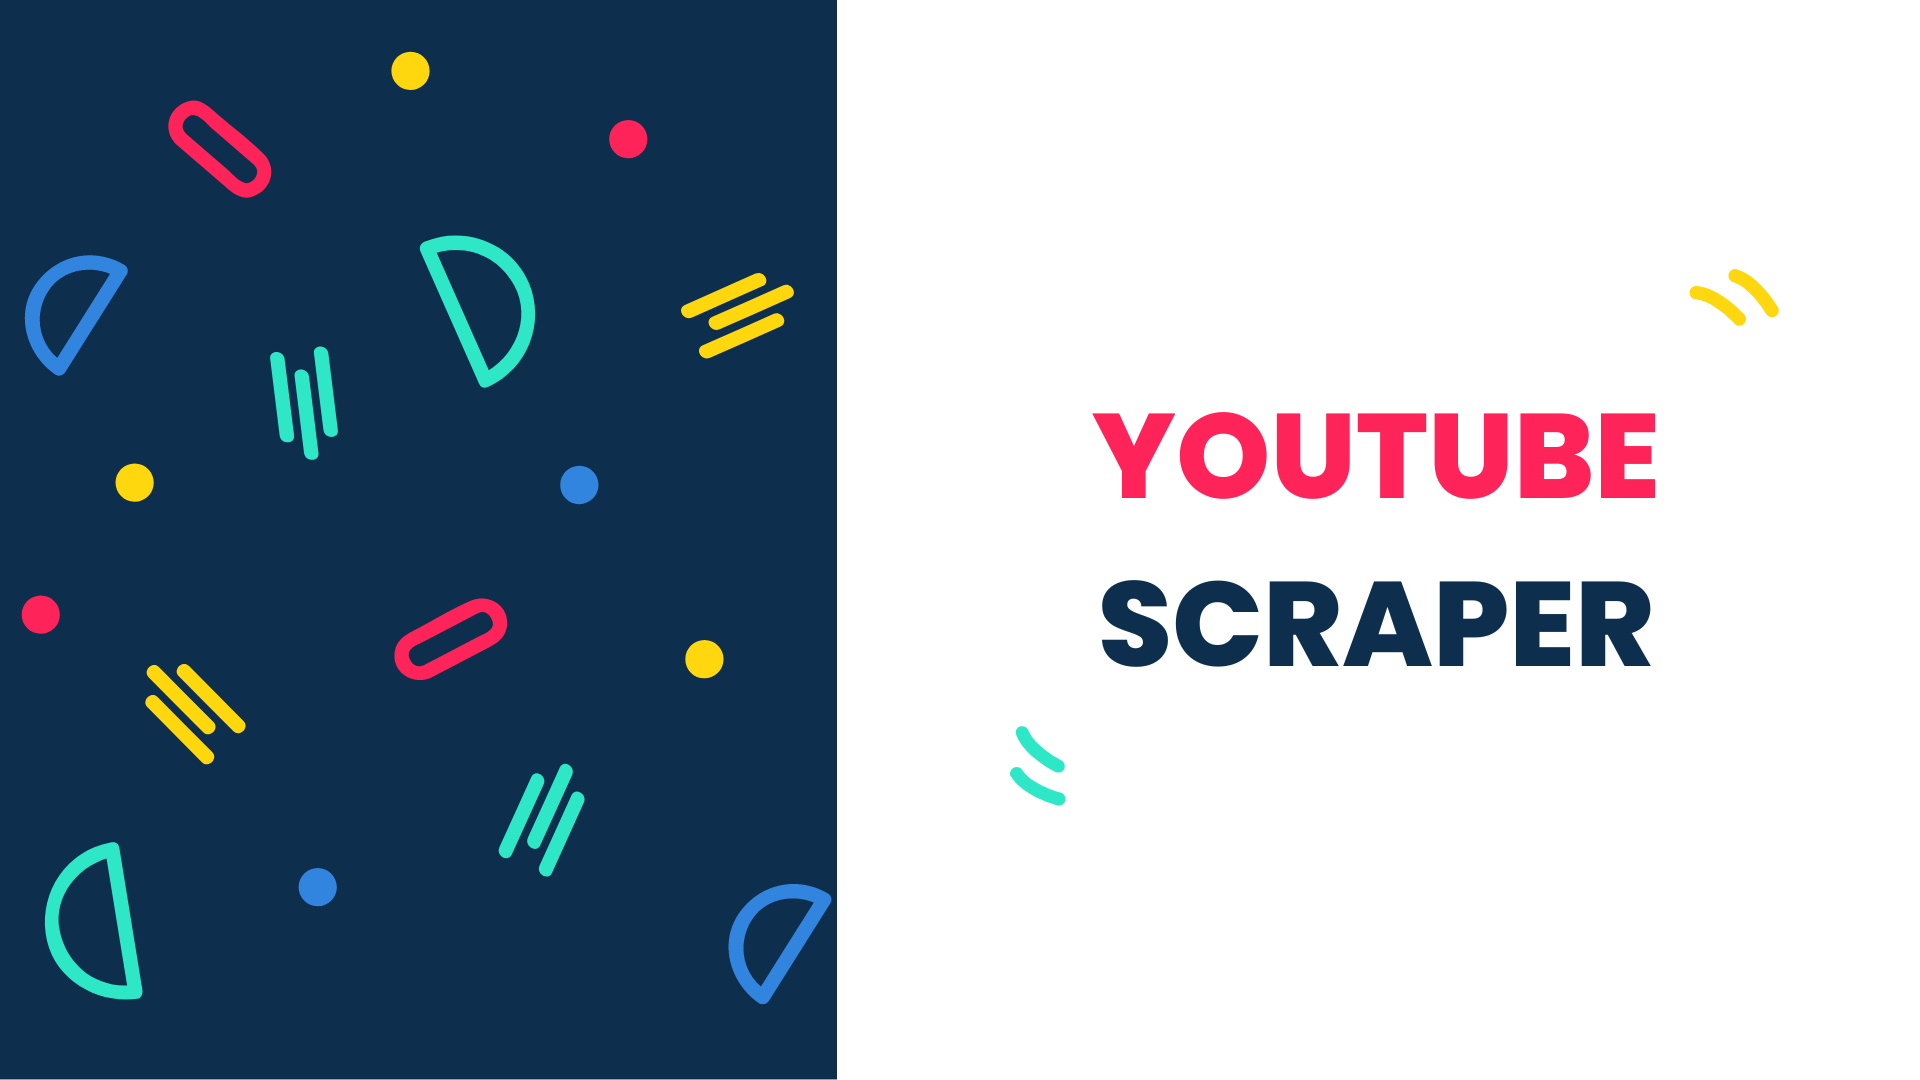 YouTube Scraper: How to Scrape 1M Channels in a Week